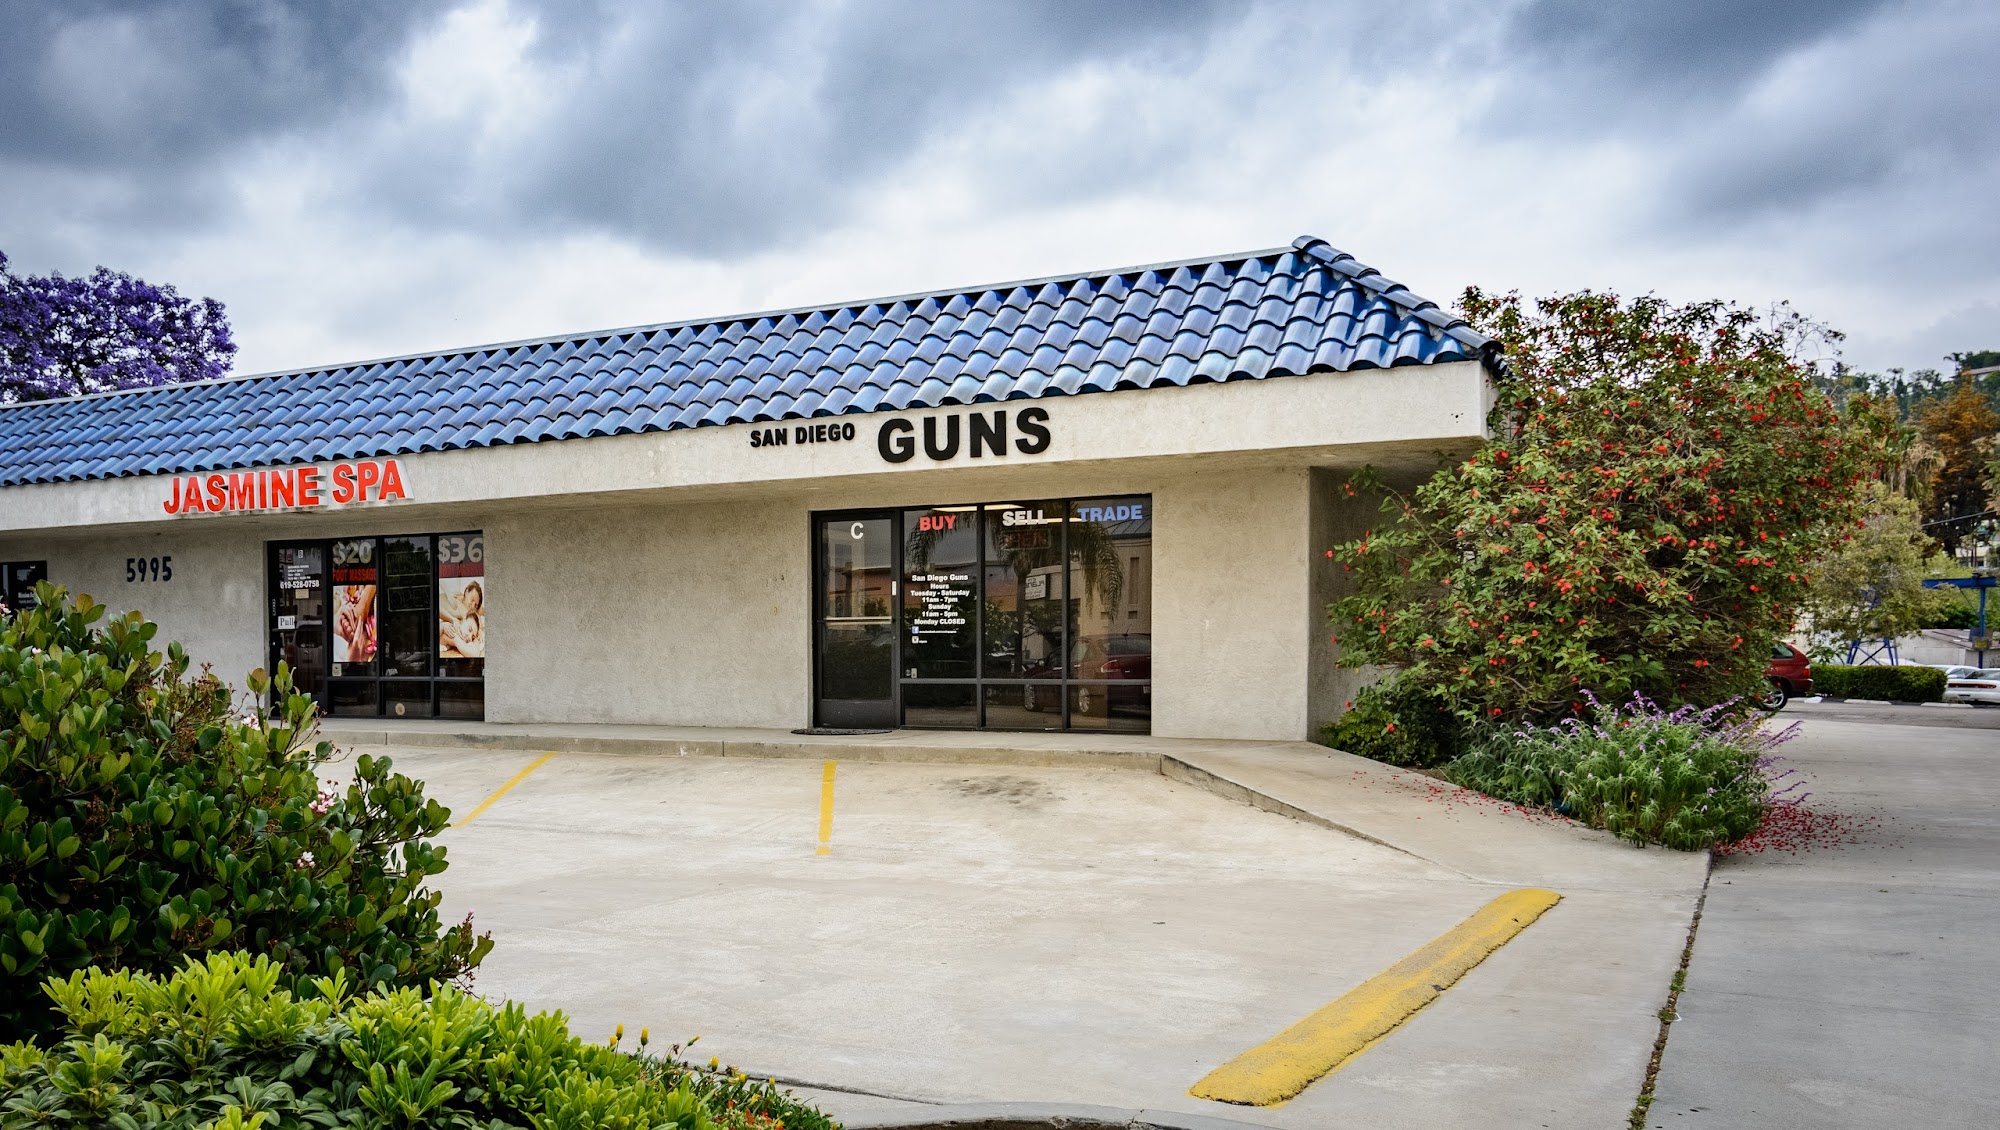 San Diego Guns